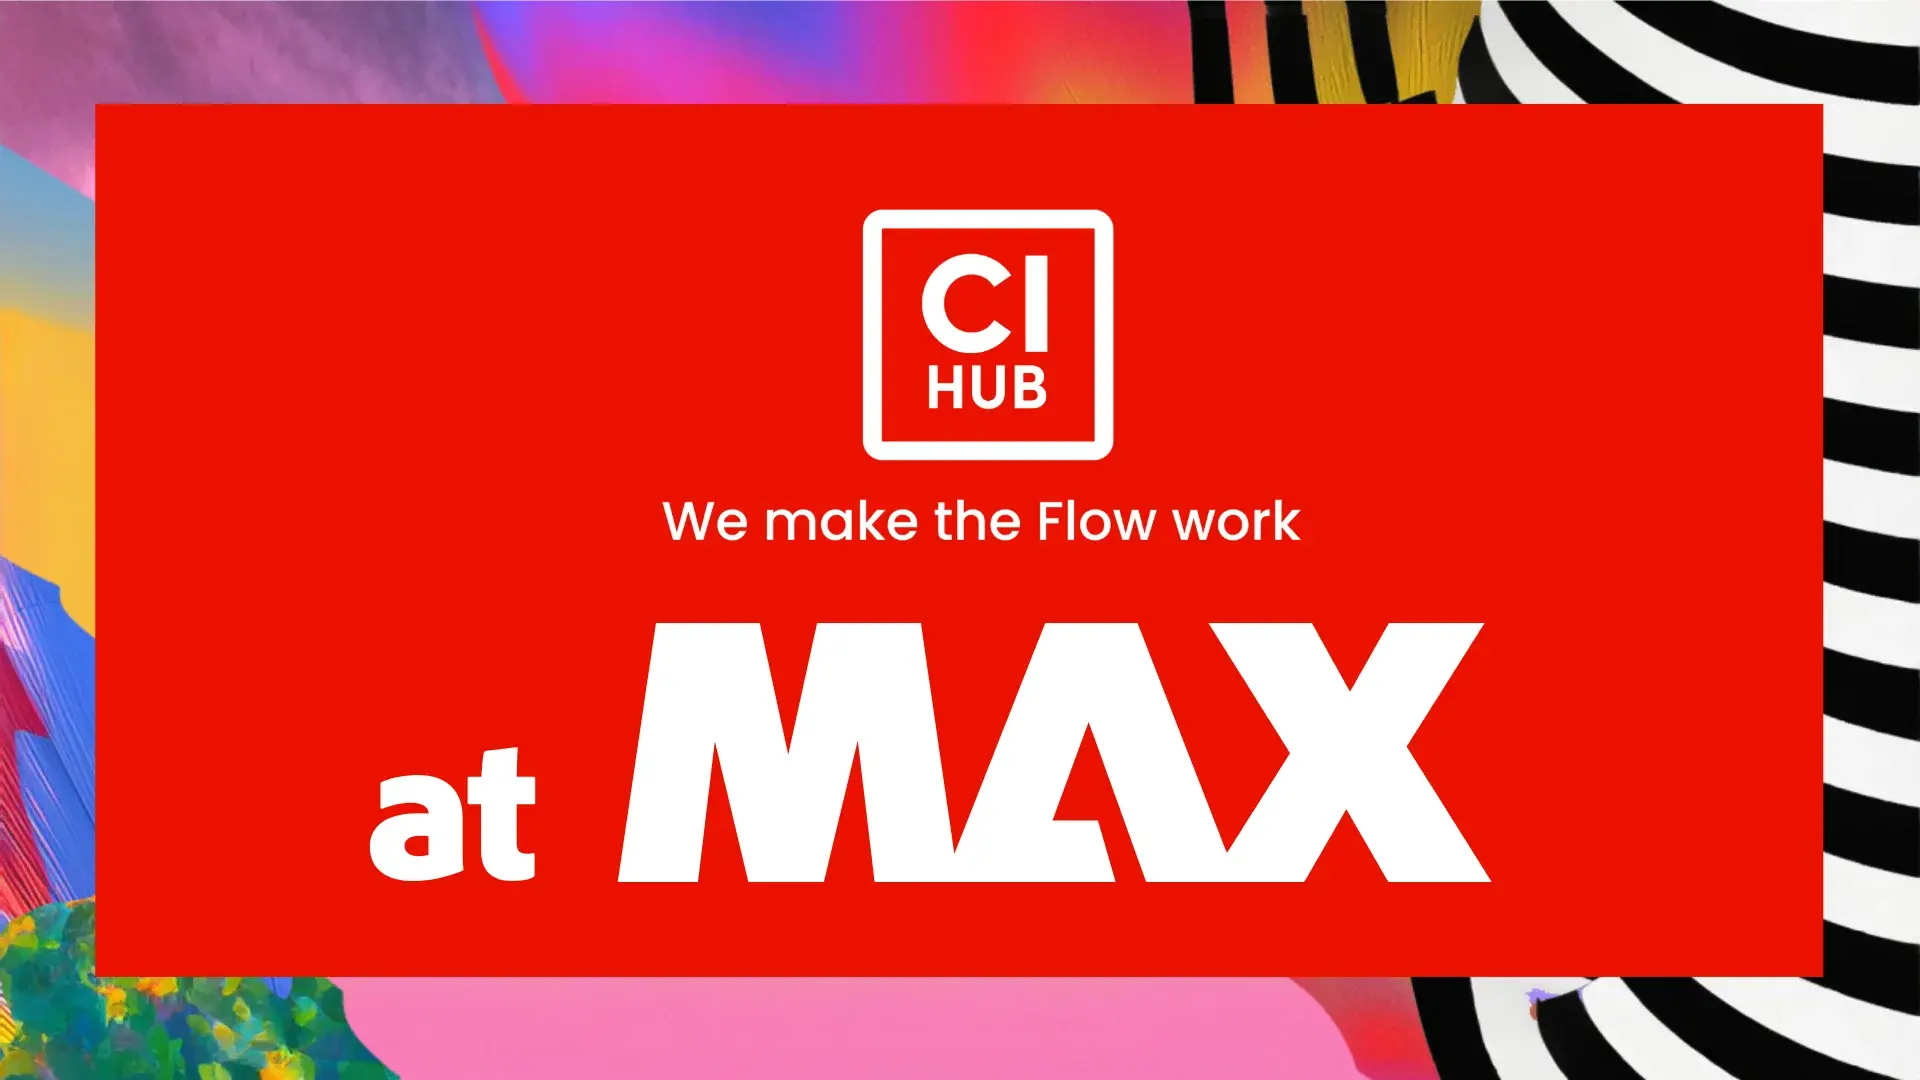 CI HUB sponsoring Adobe MAX in Miami